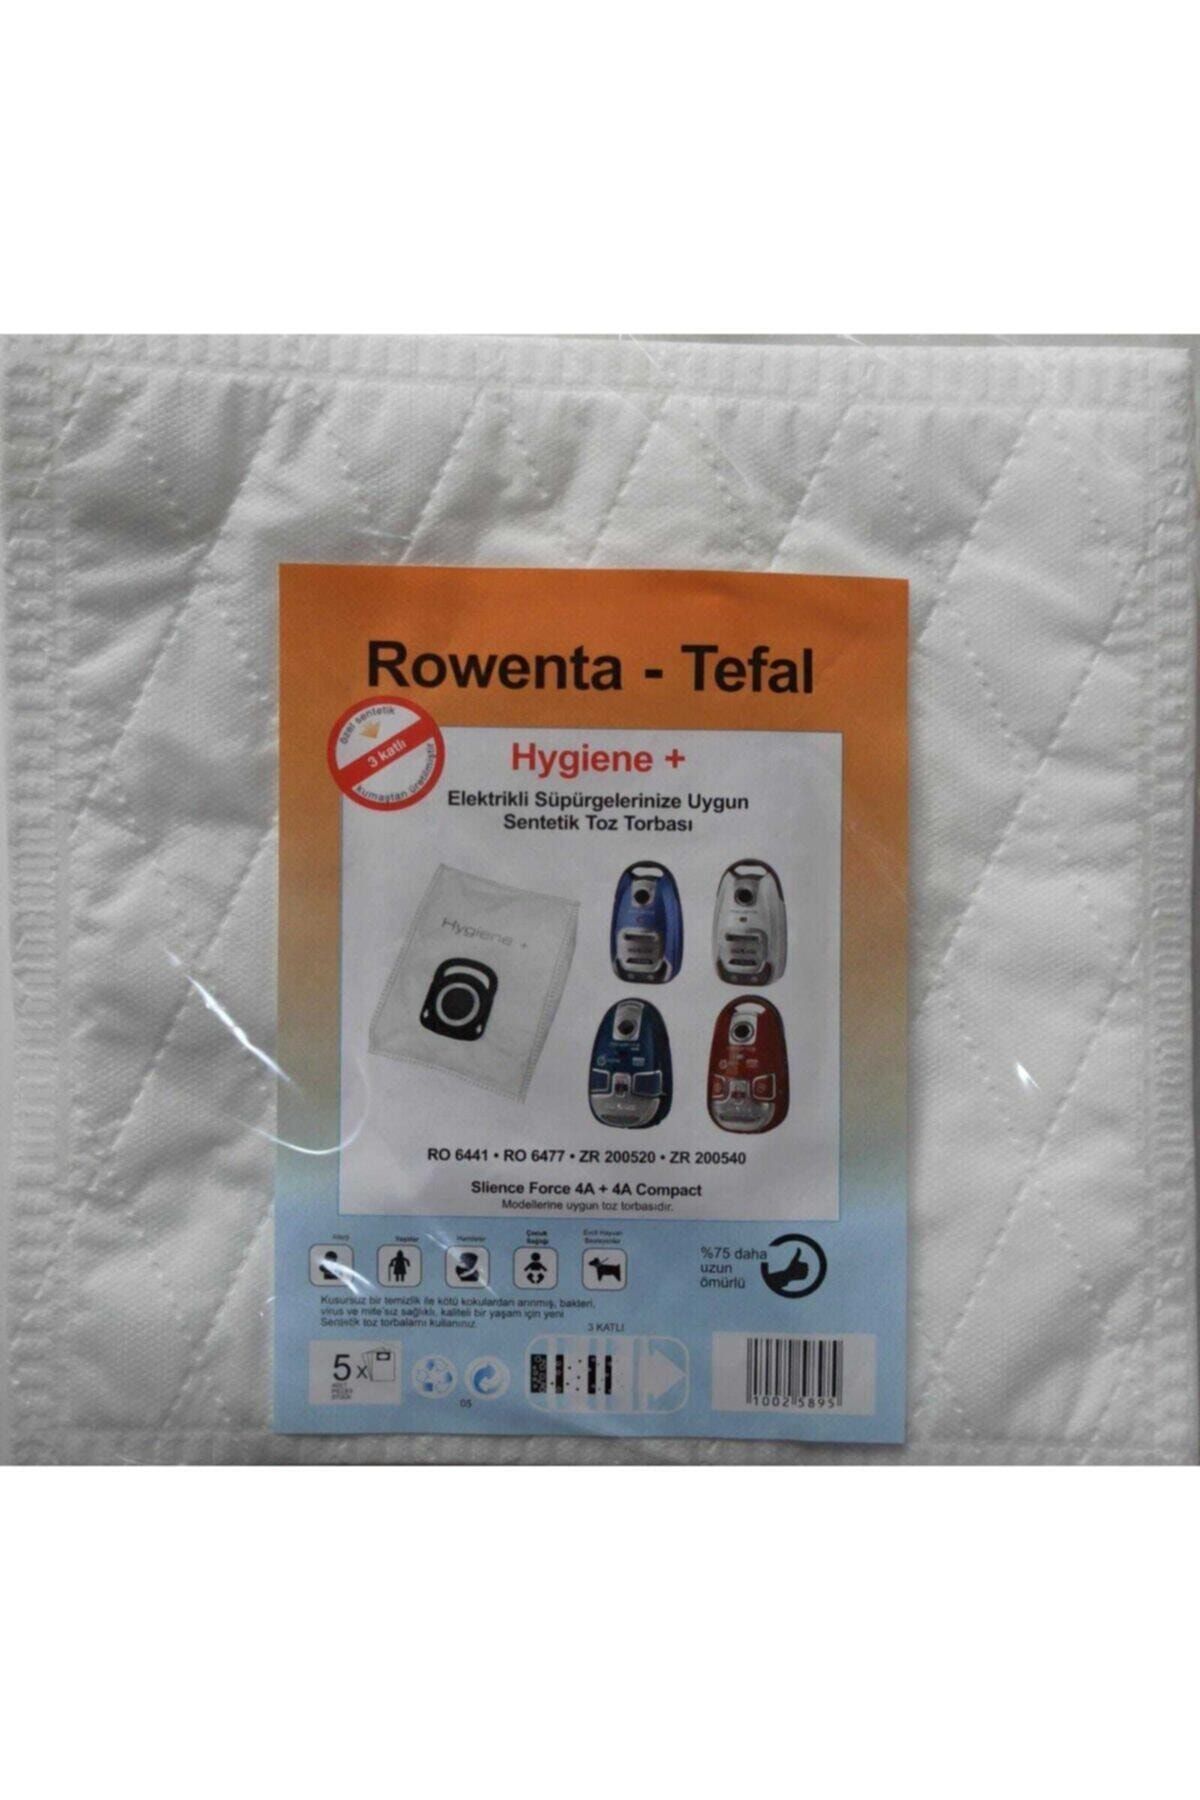 Rowenta - Tefal Hygiene + (plus) Elektrikli Süpürge Sentetik Toz Torbası (5 Adet)